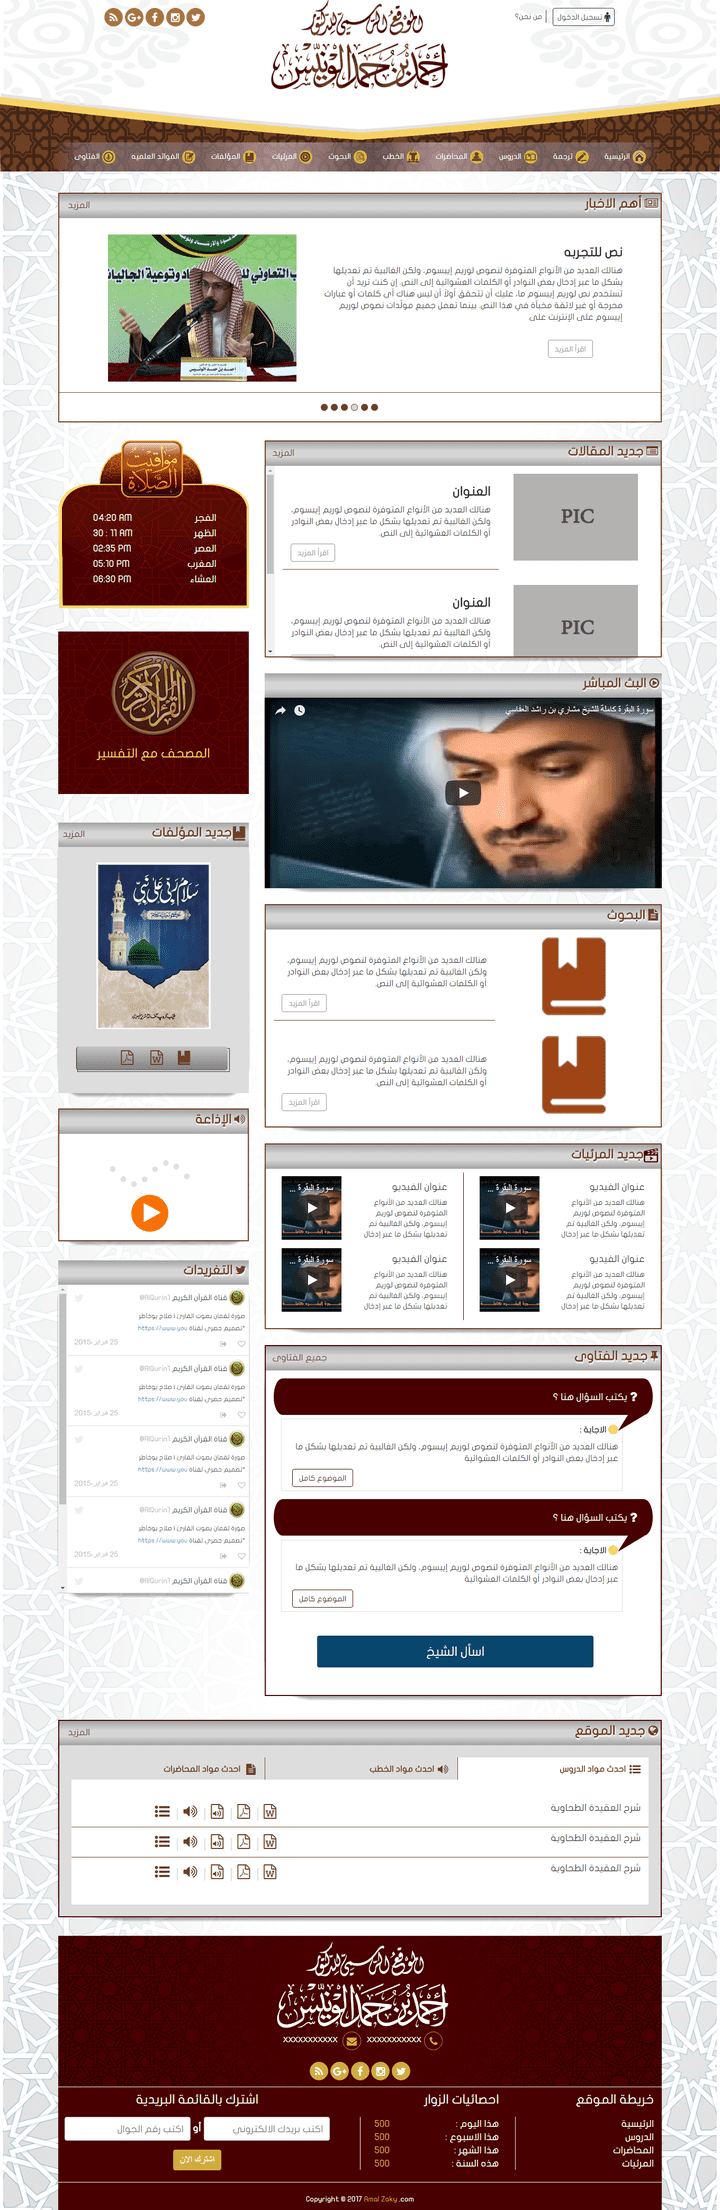 الموقع الرسمي للدكتور احمد بن حمد الونيس